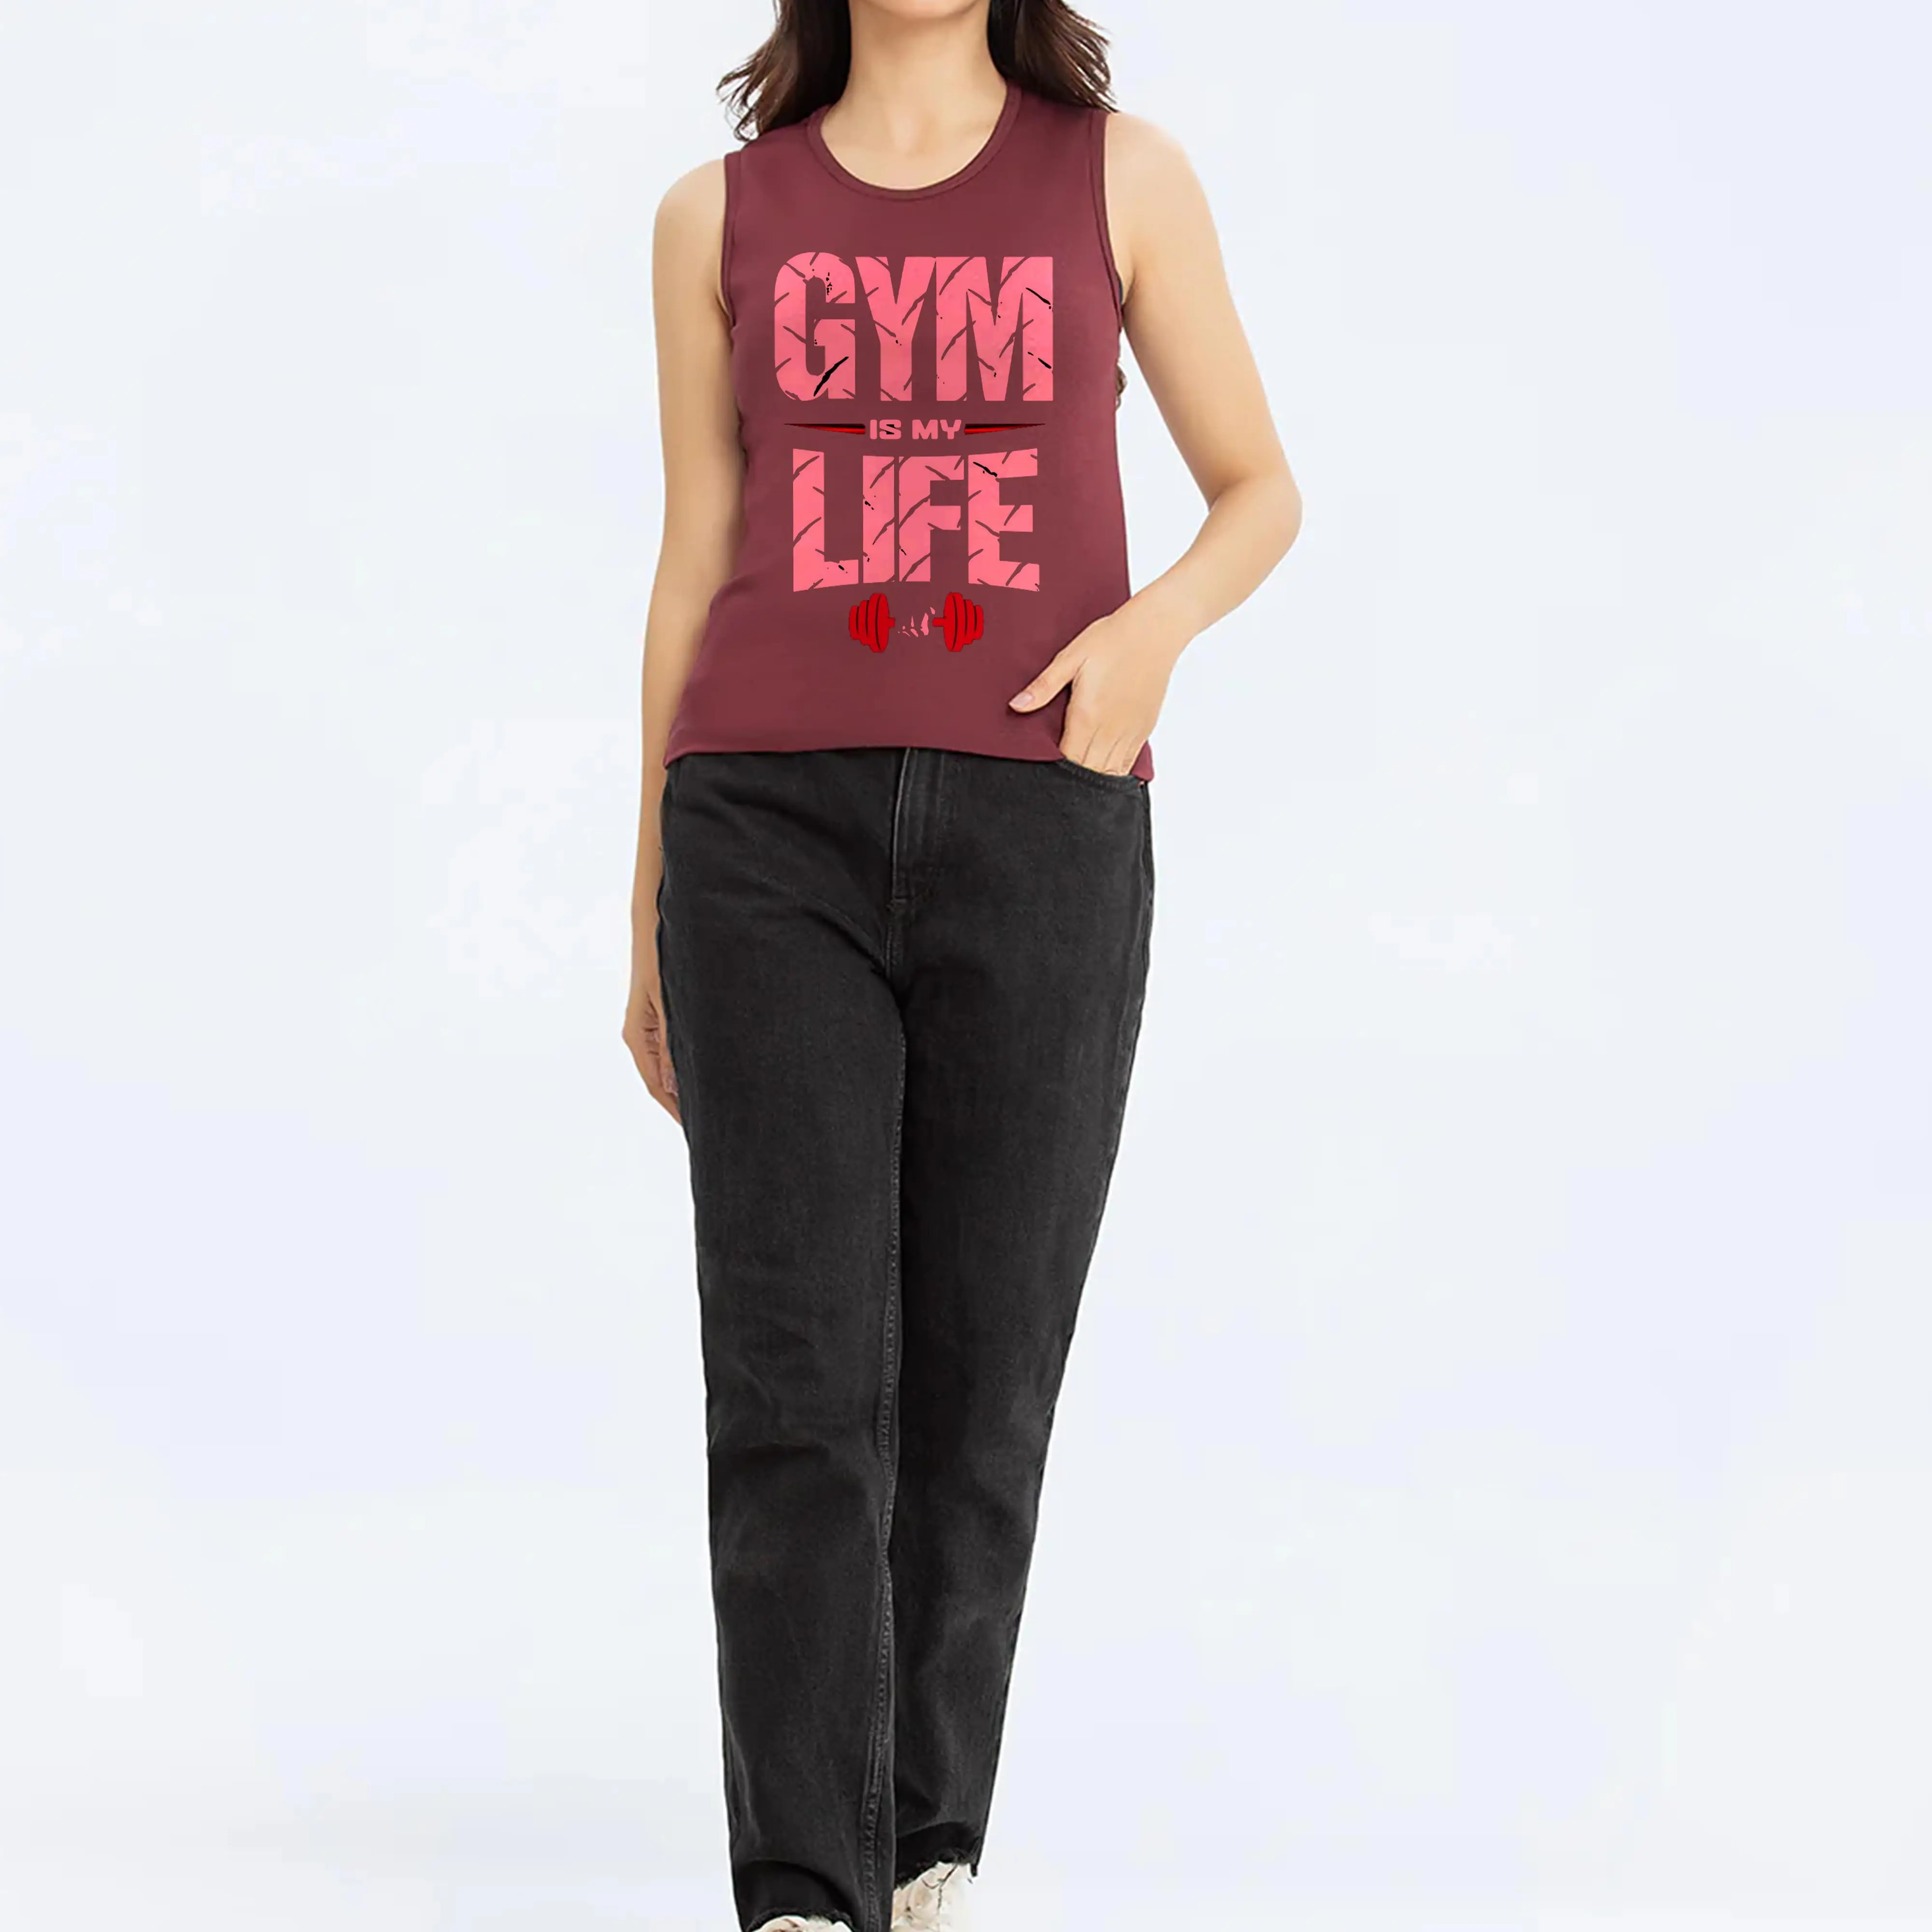 OEM kadınlar Tank Tops Fitness salonu aktif giyim özel egzersiz nefes kadın düz renk toptan koşu atlet kızlar için